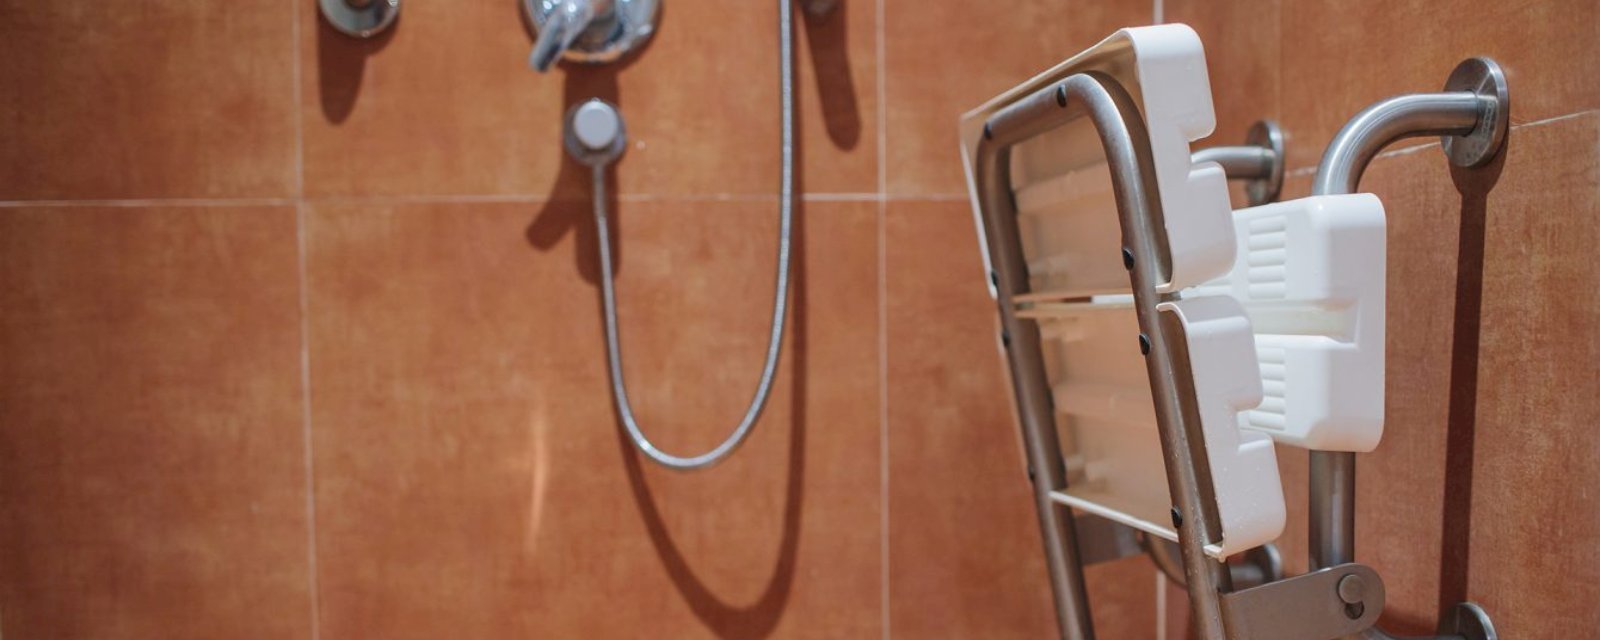 Quels sont les accessoires pour une douche sécurisée senior ?